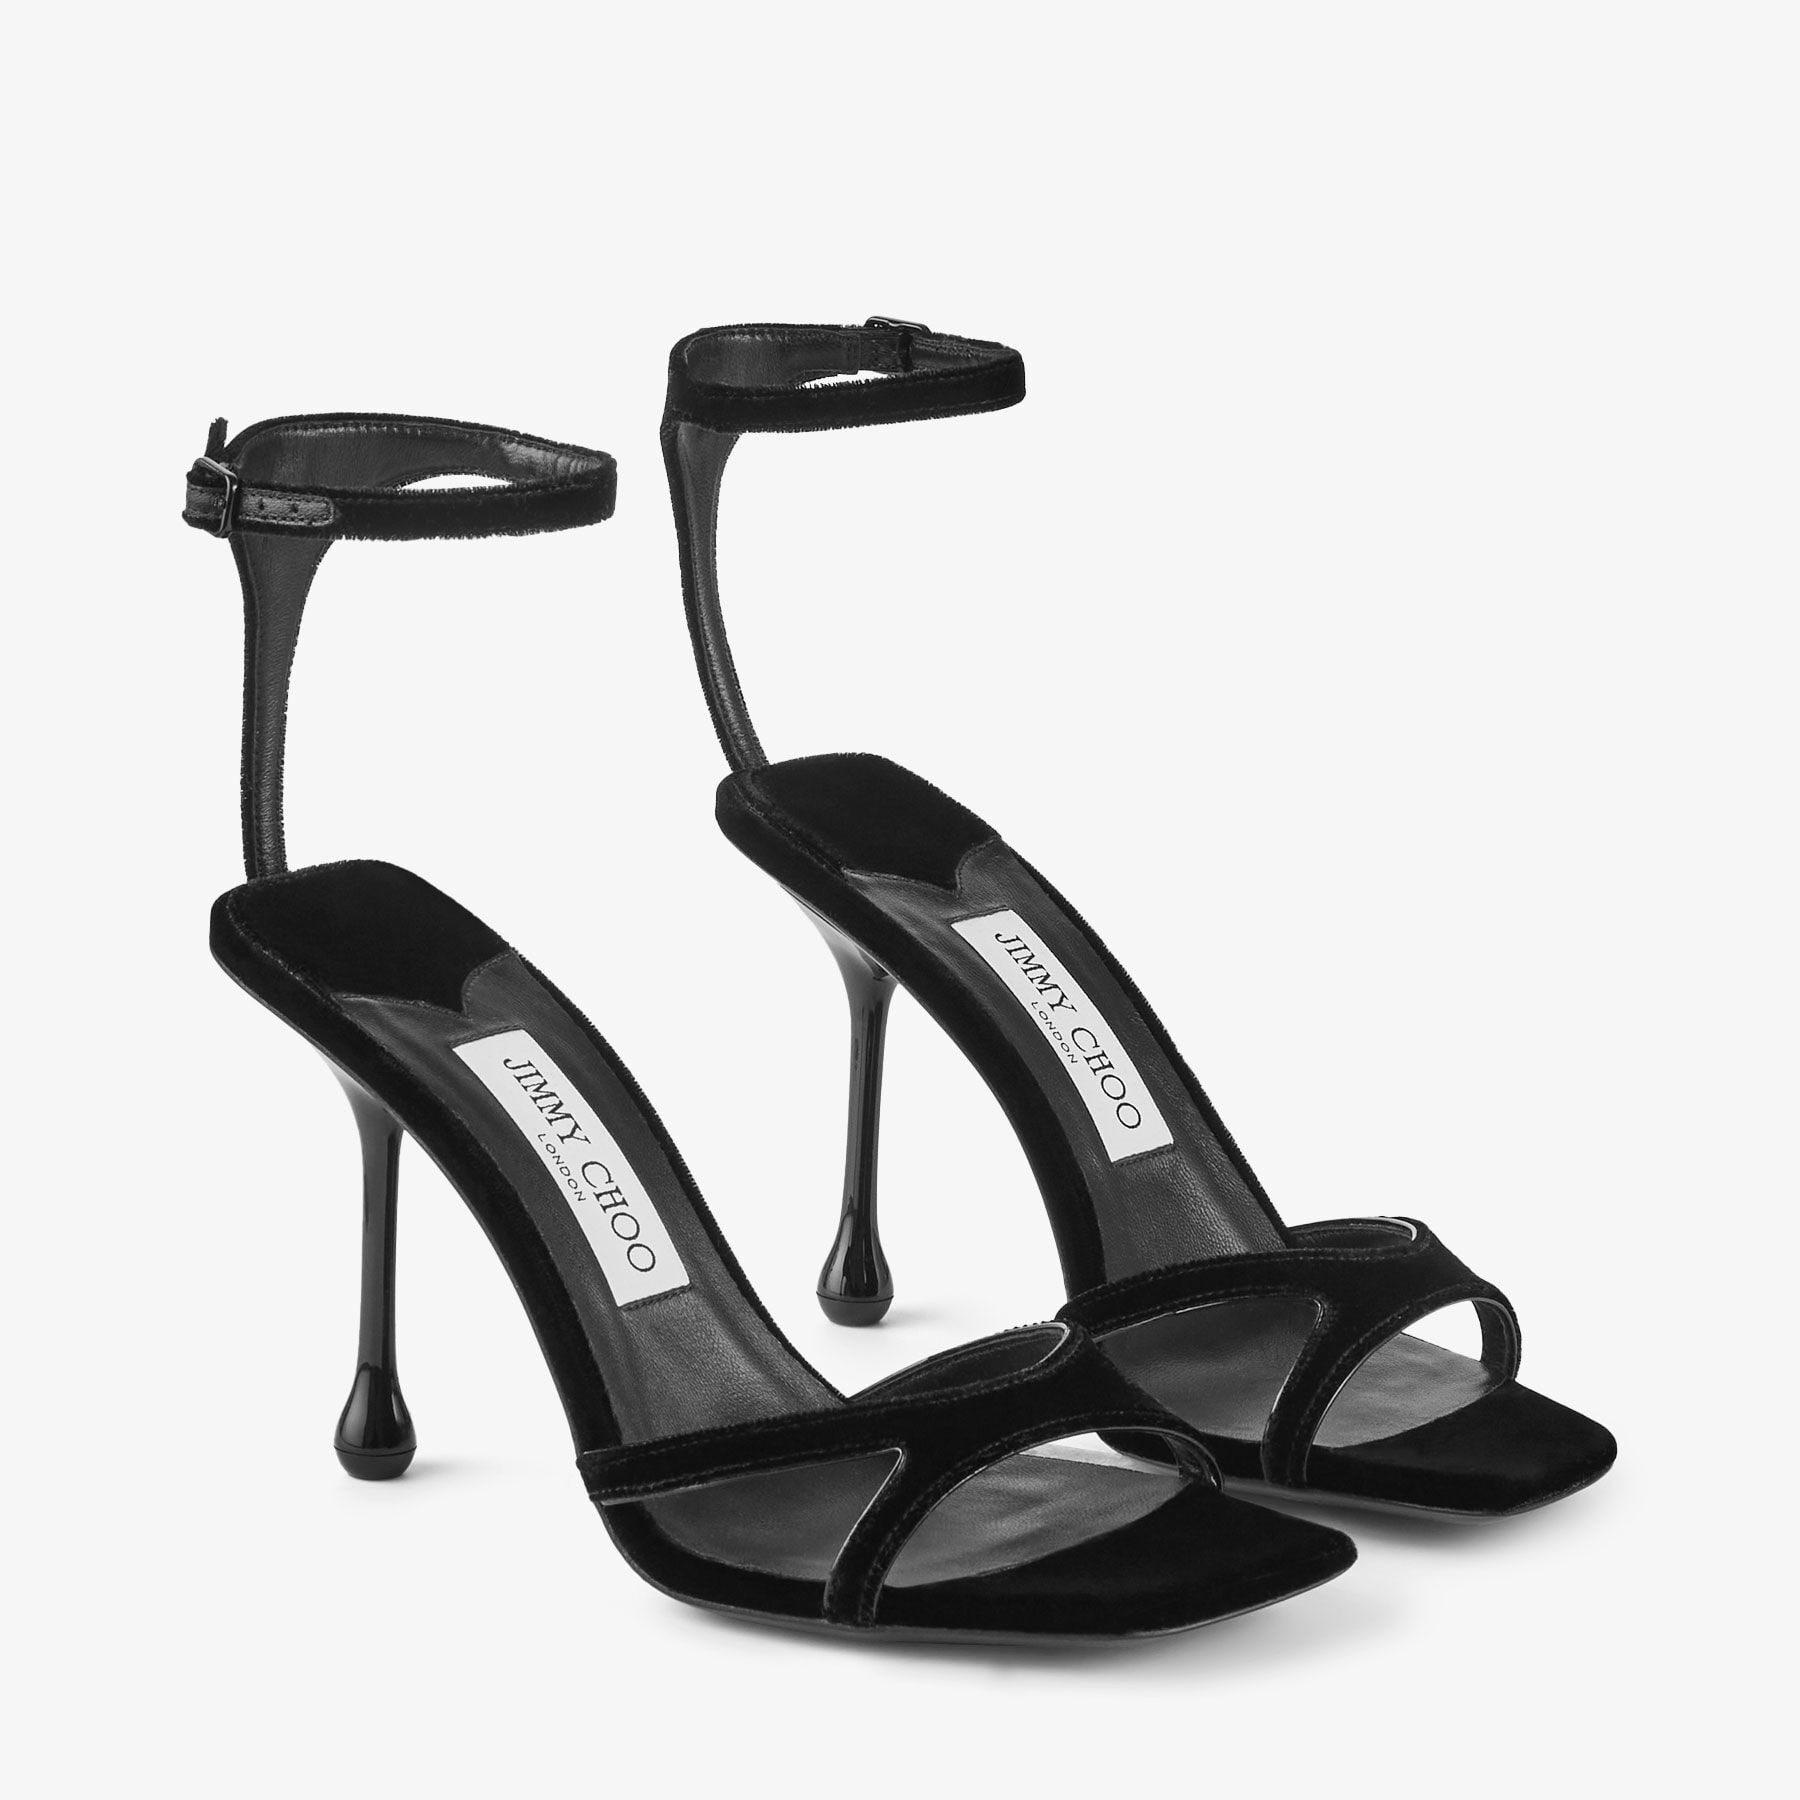 Ixia Sandal 95
Black Velvet Sandals - 3